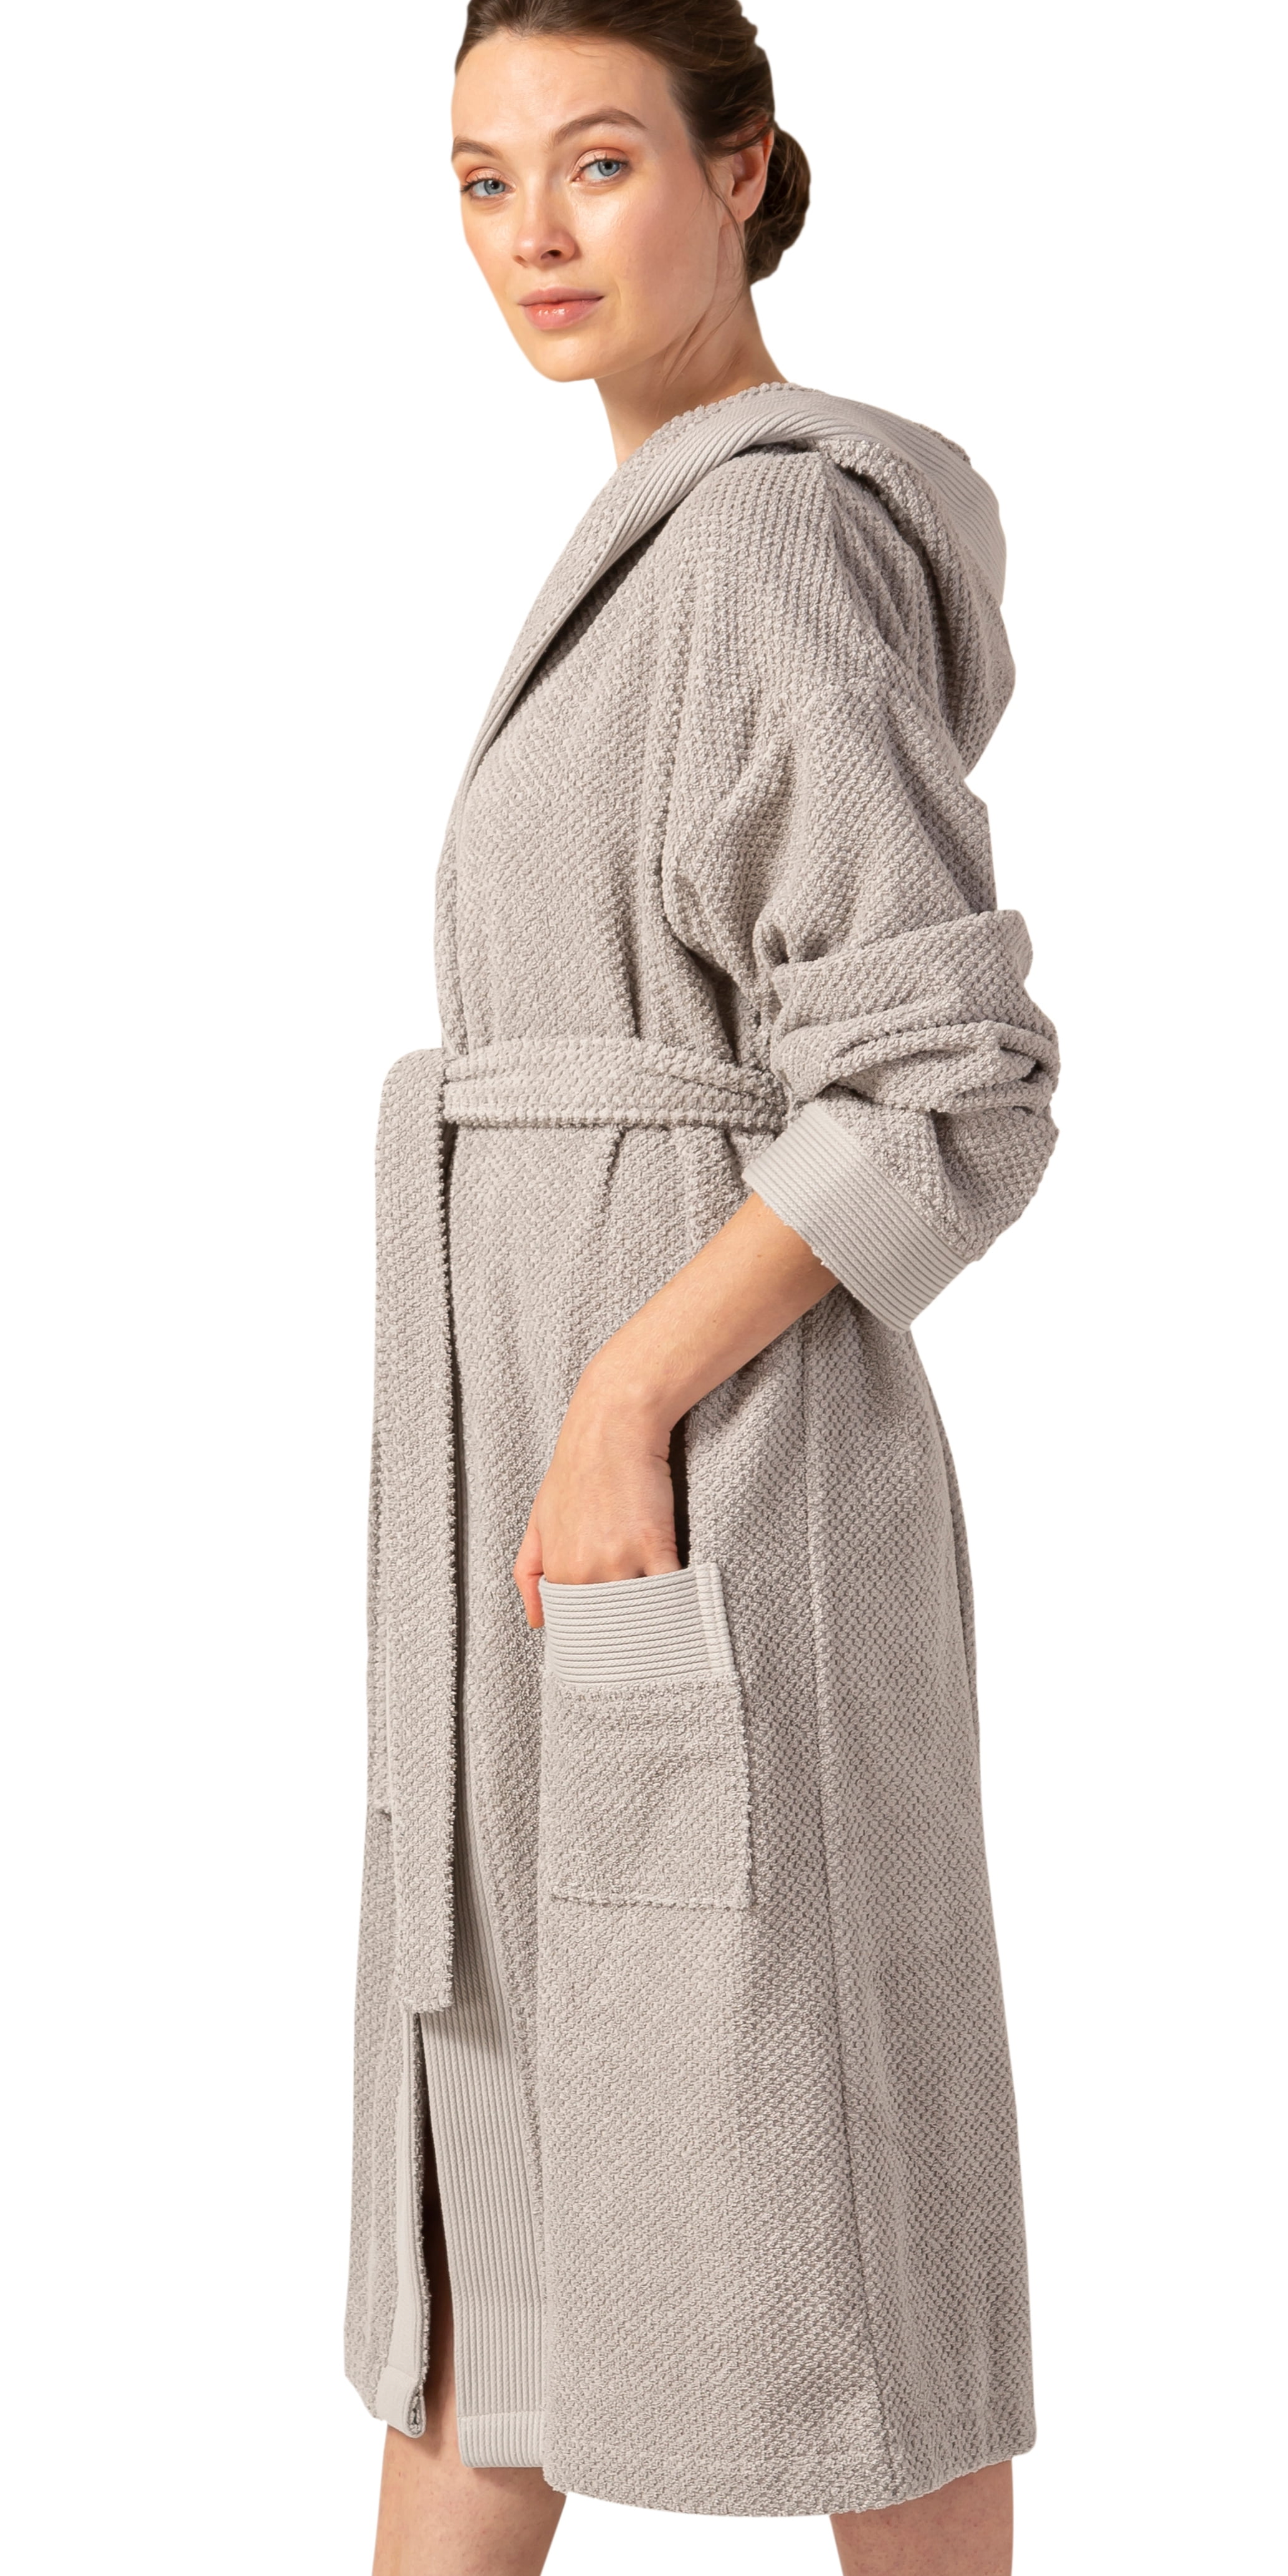 bathrobe women